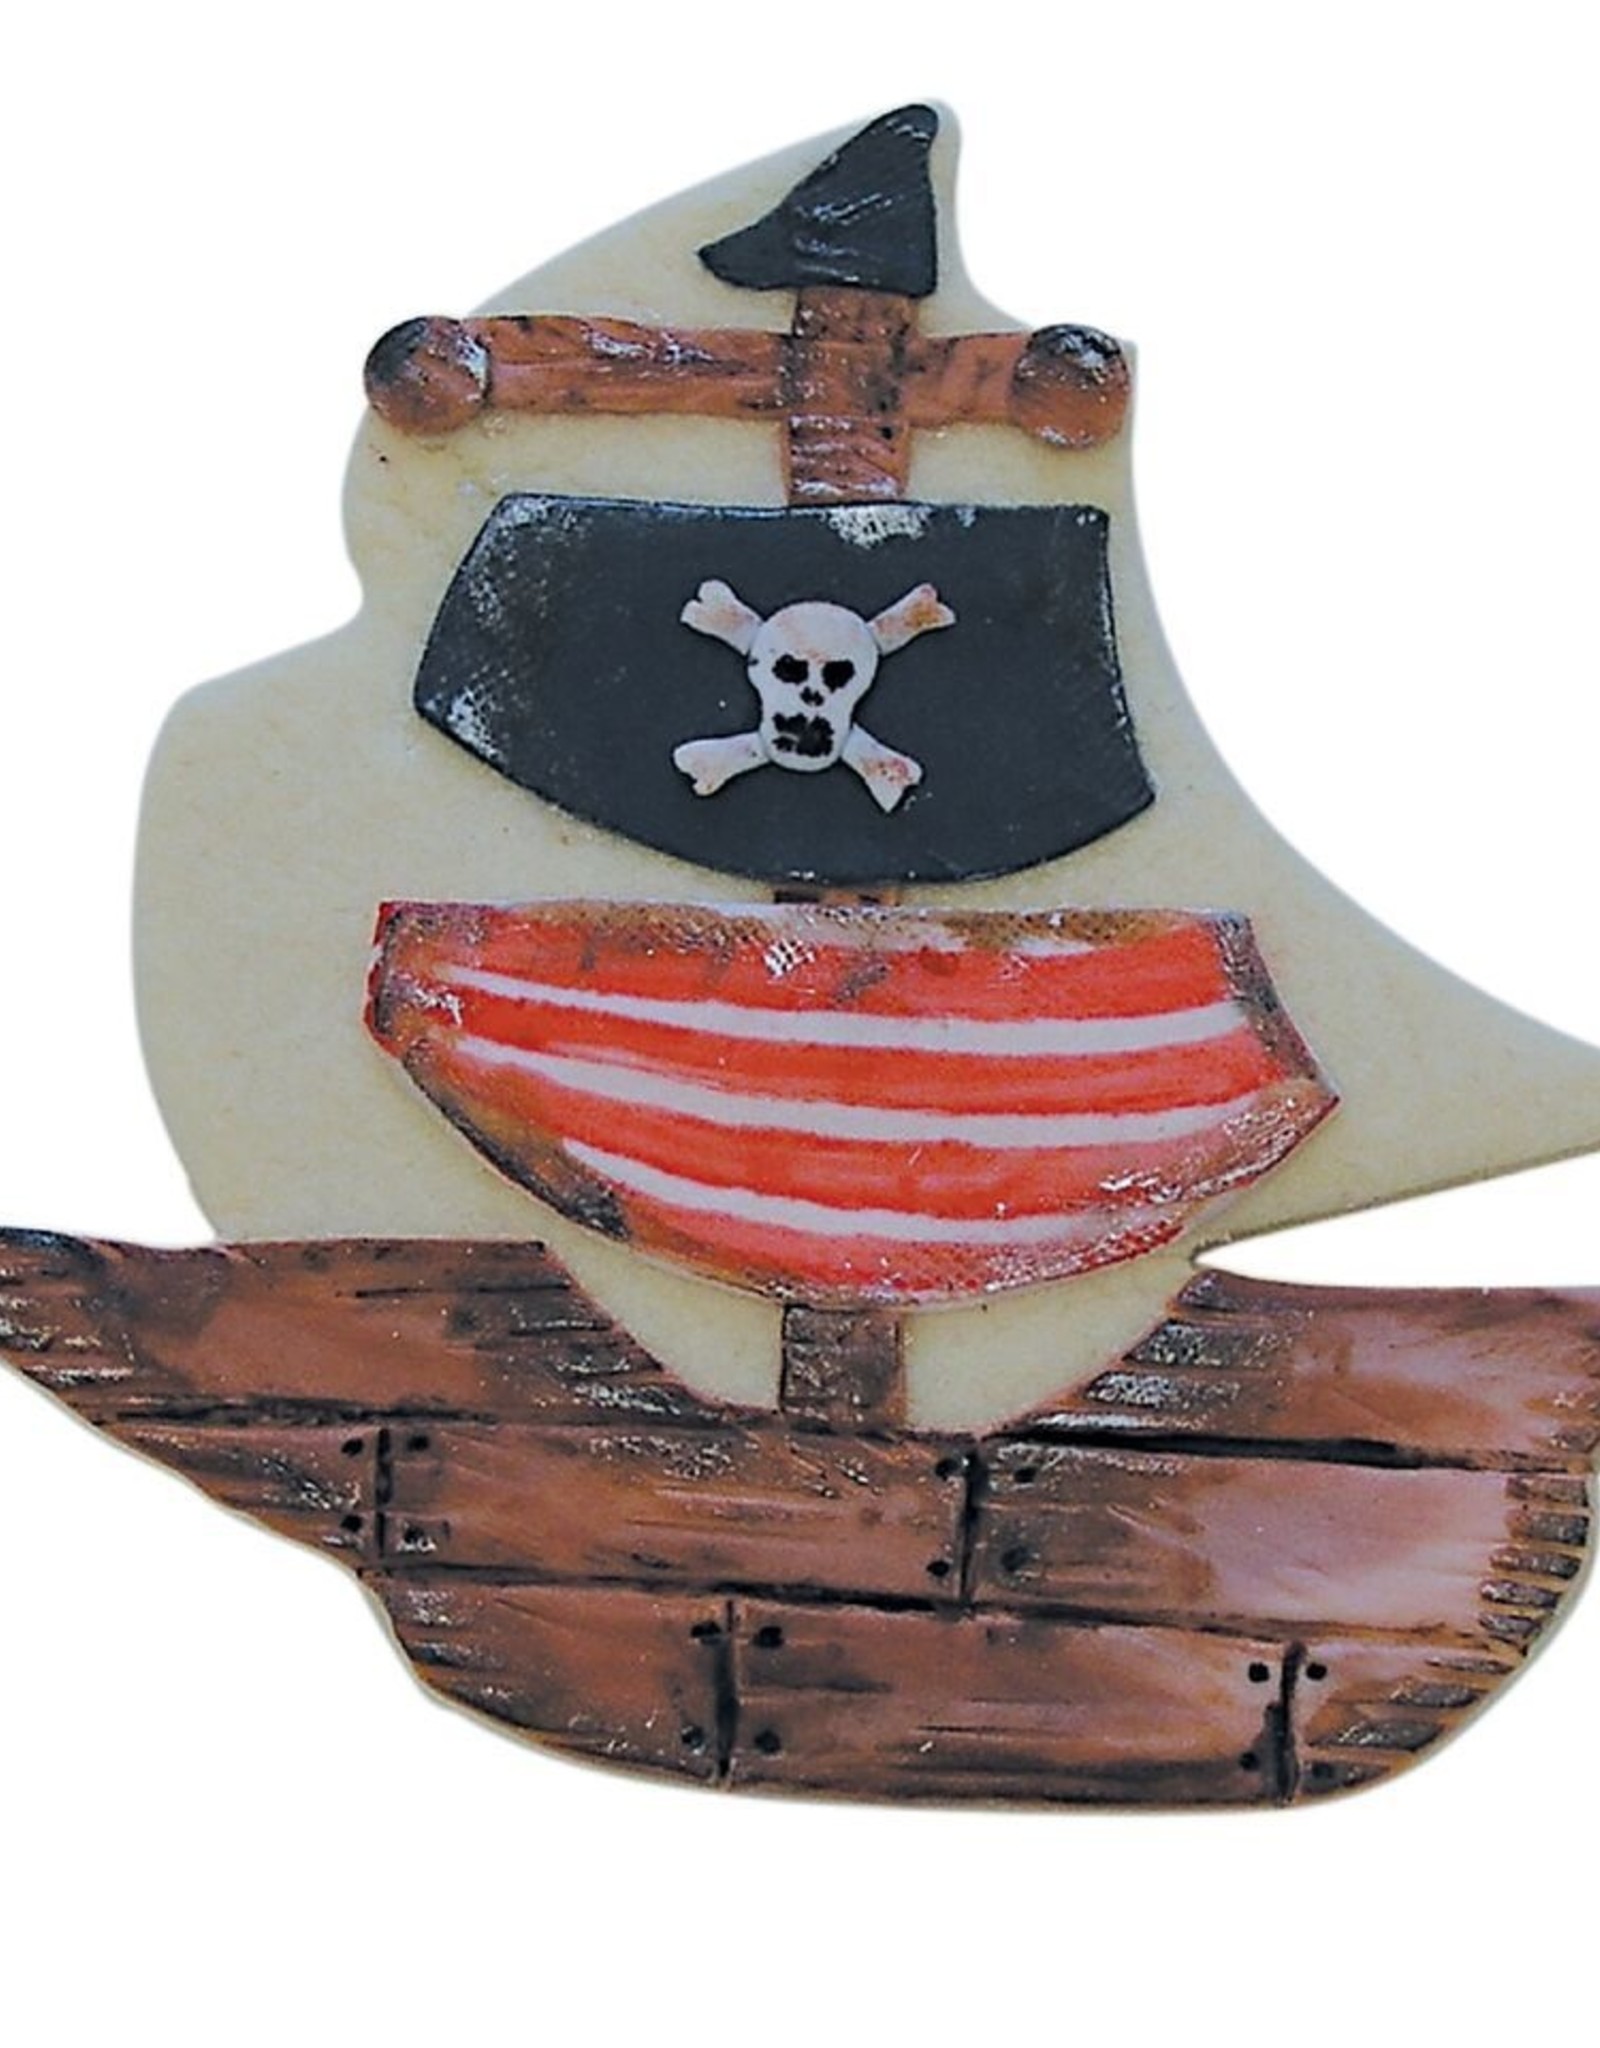 Pirate Ship Cookie Cutter (4.5")